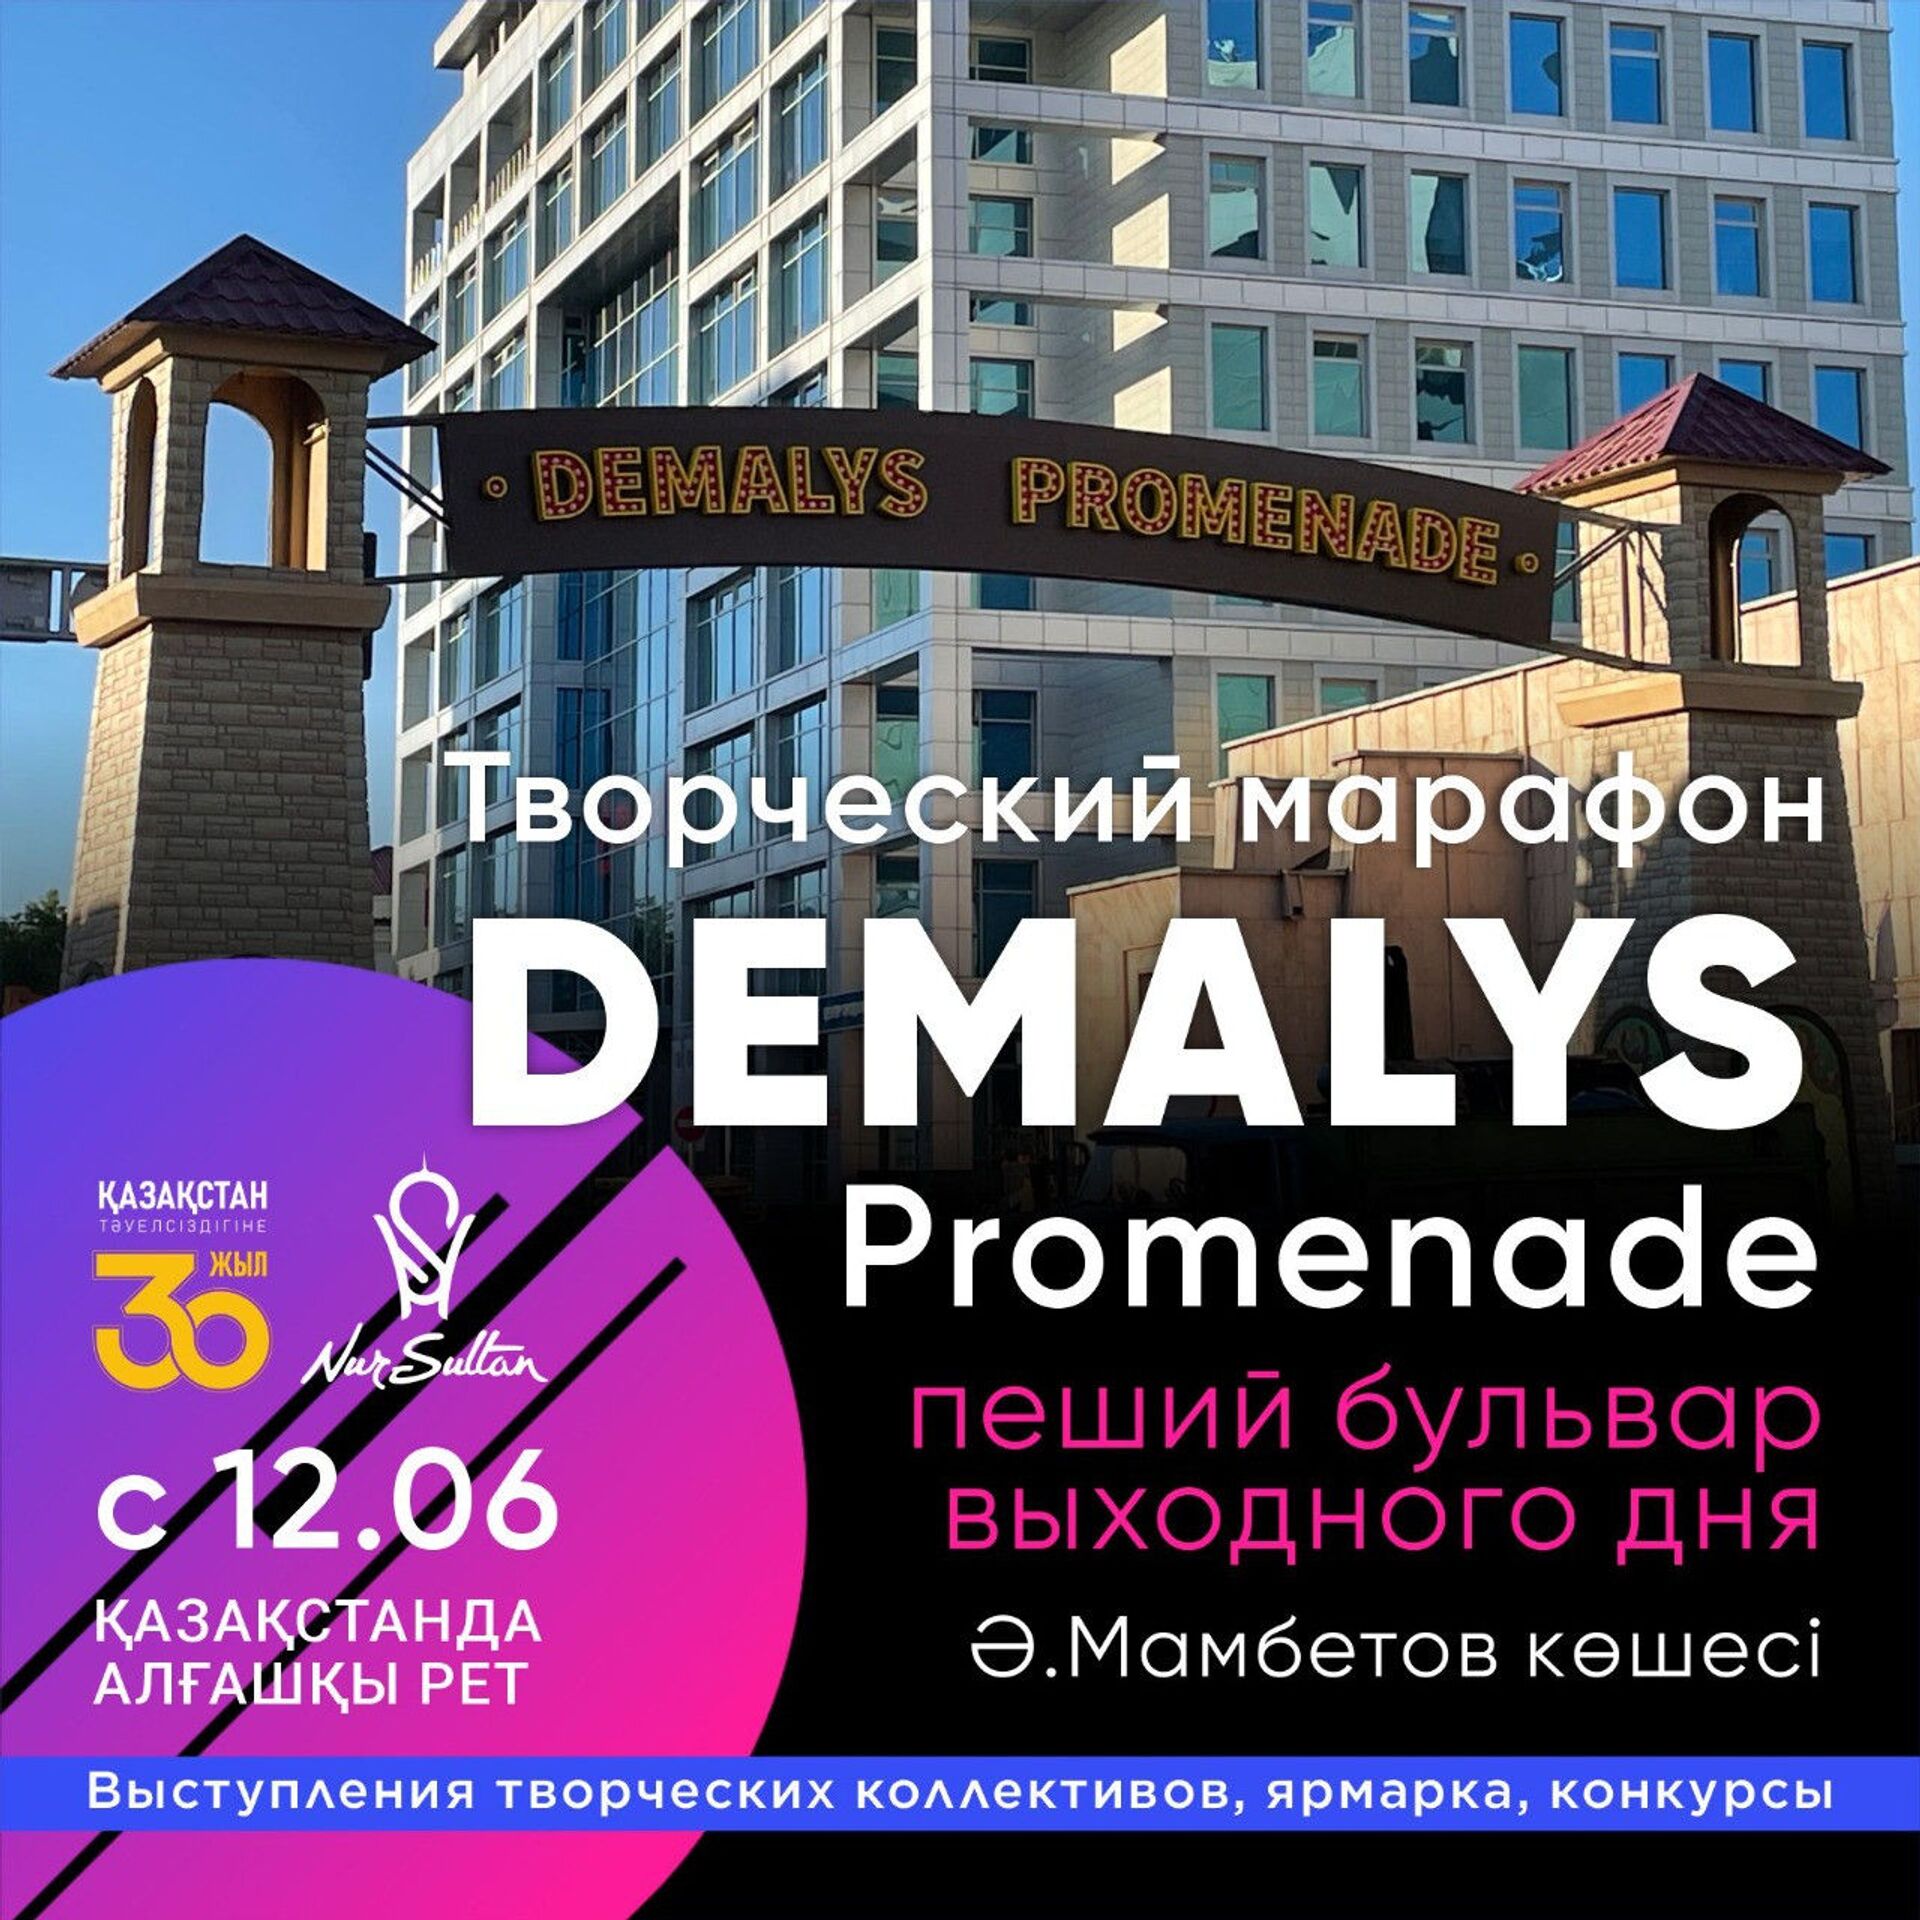 Улицу для пеших прогулок Demalys Promenade откроют в Нур-Султане - Sputnik Казахстан, 1920, 10.06.2021